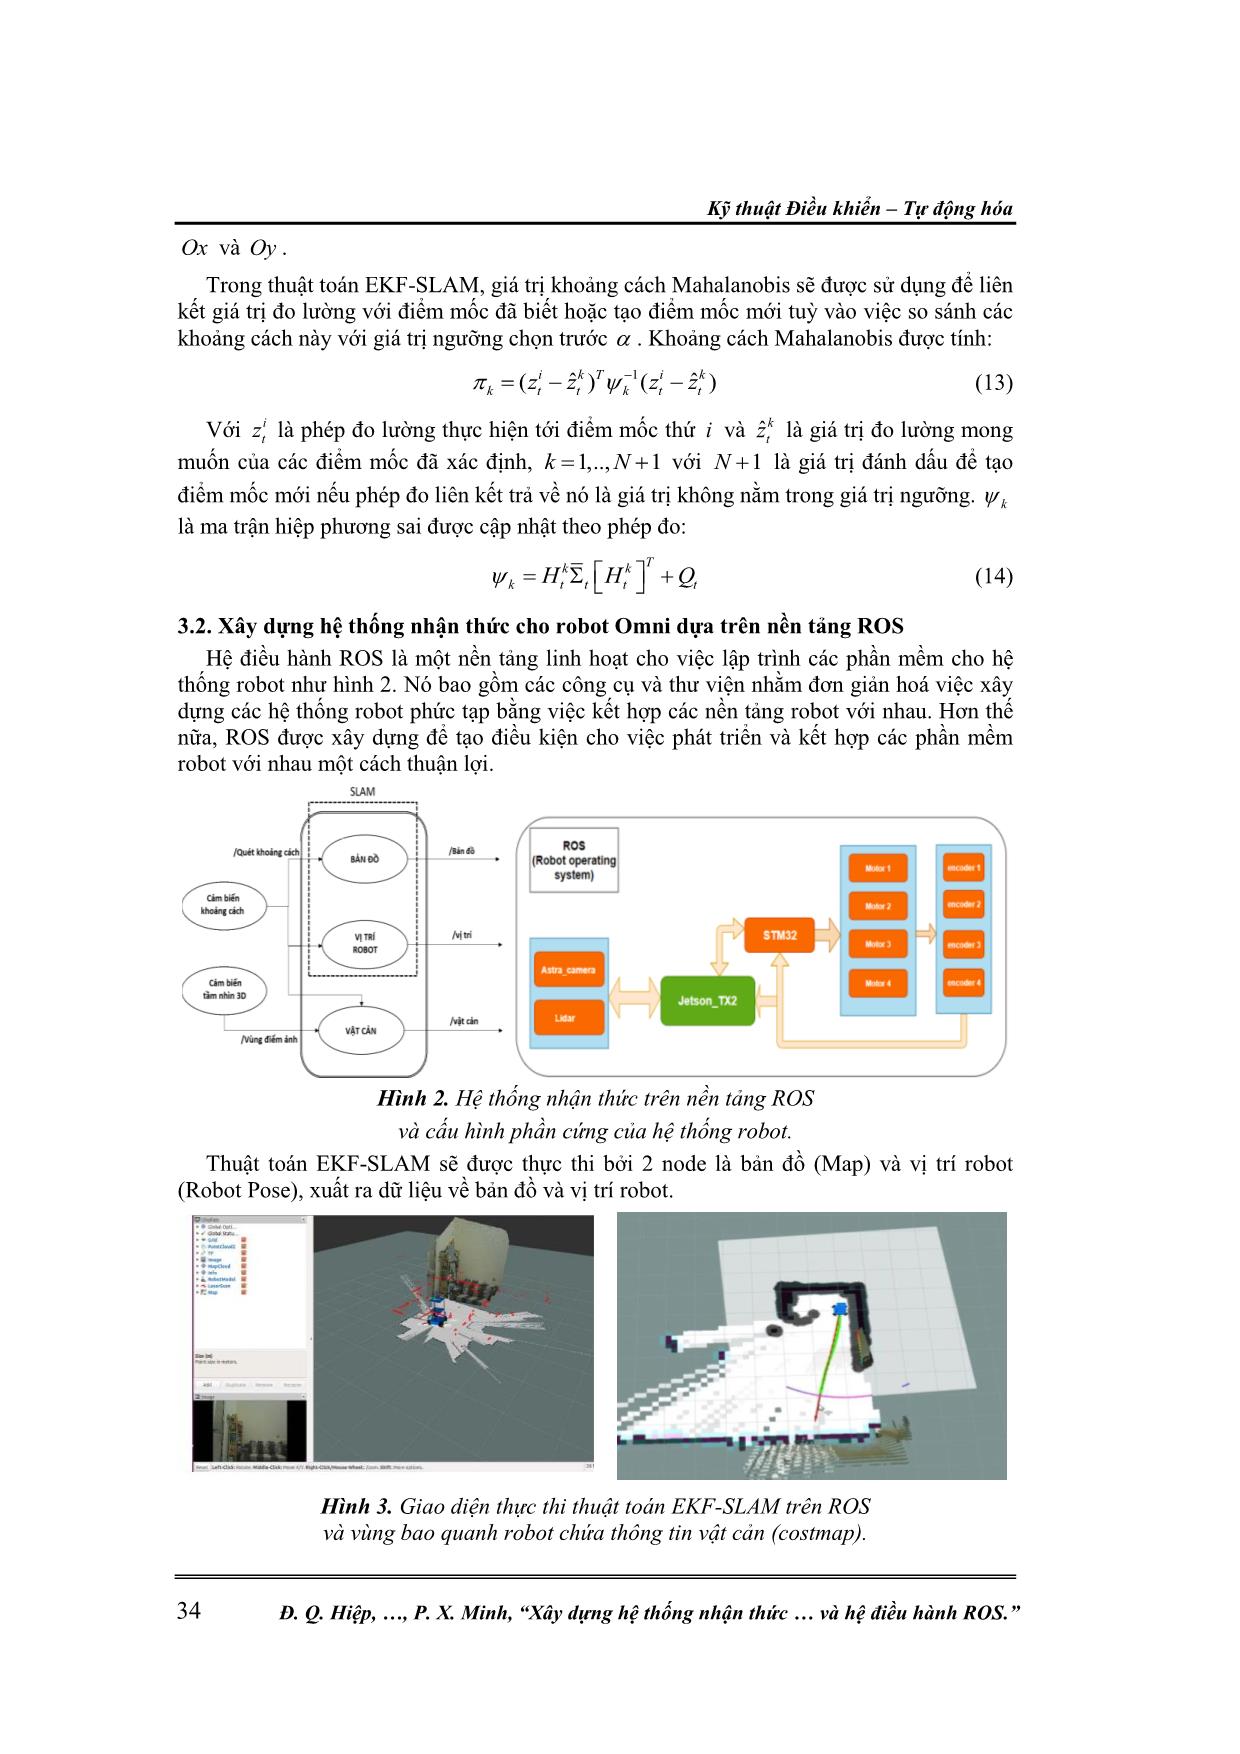 Xây dựng hệ thống nhận thức môi trường cho robot tự hành omni bốn bánh dựa trên thuật toán ekf-slam và hệ điều hành ros trang 5